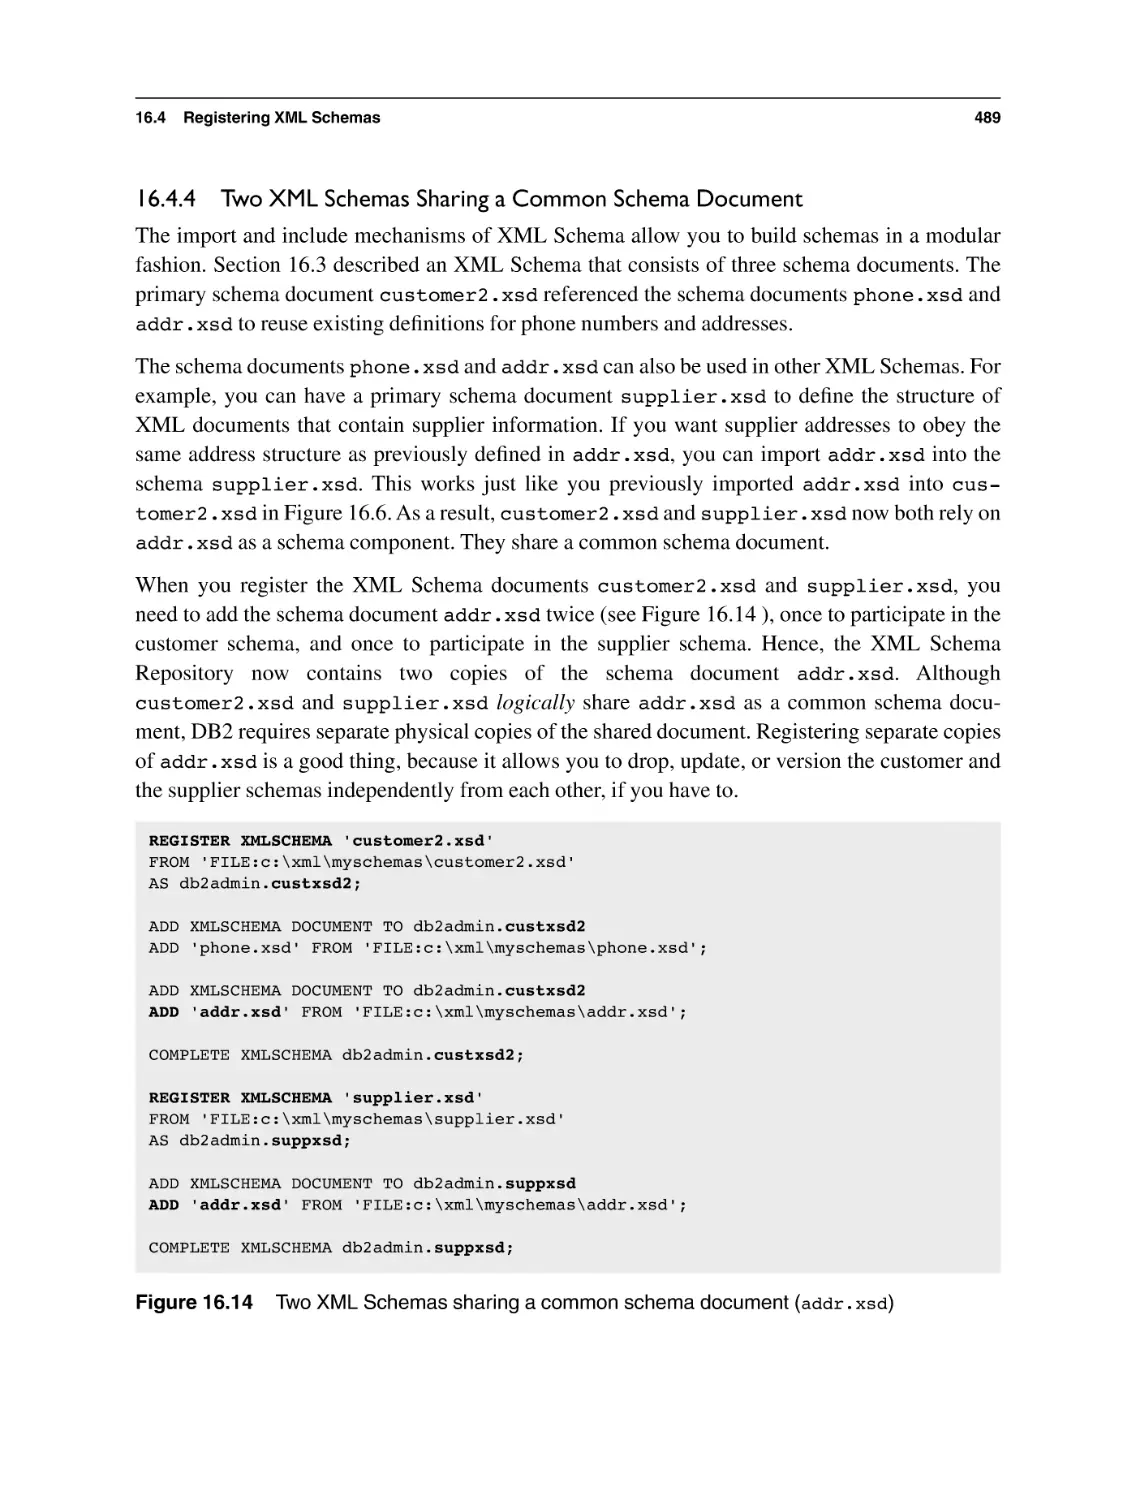 16.4.4 Two XML Schemas Sharing a Common Schema Document